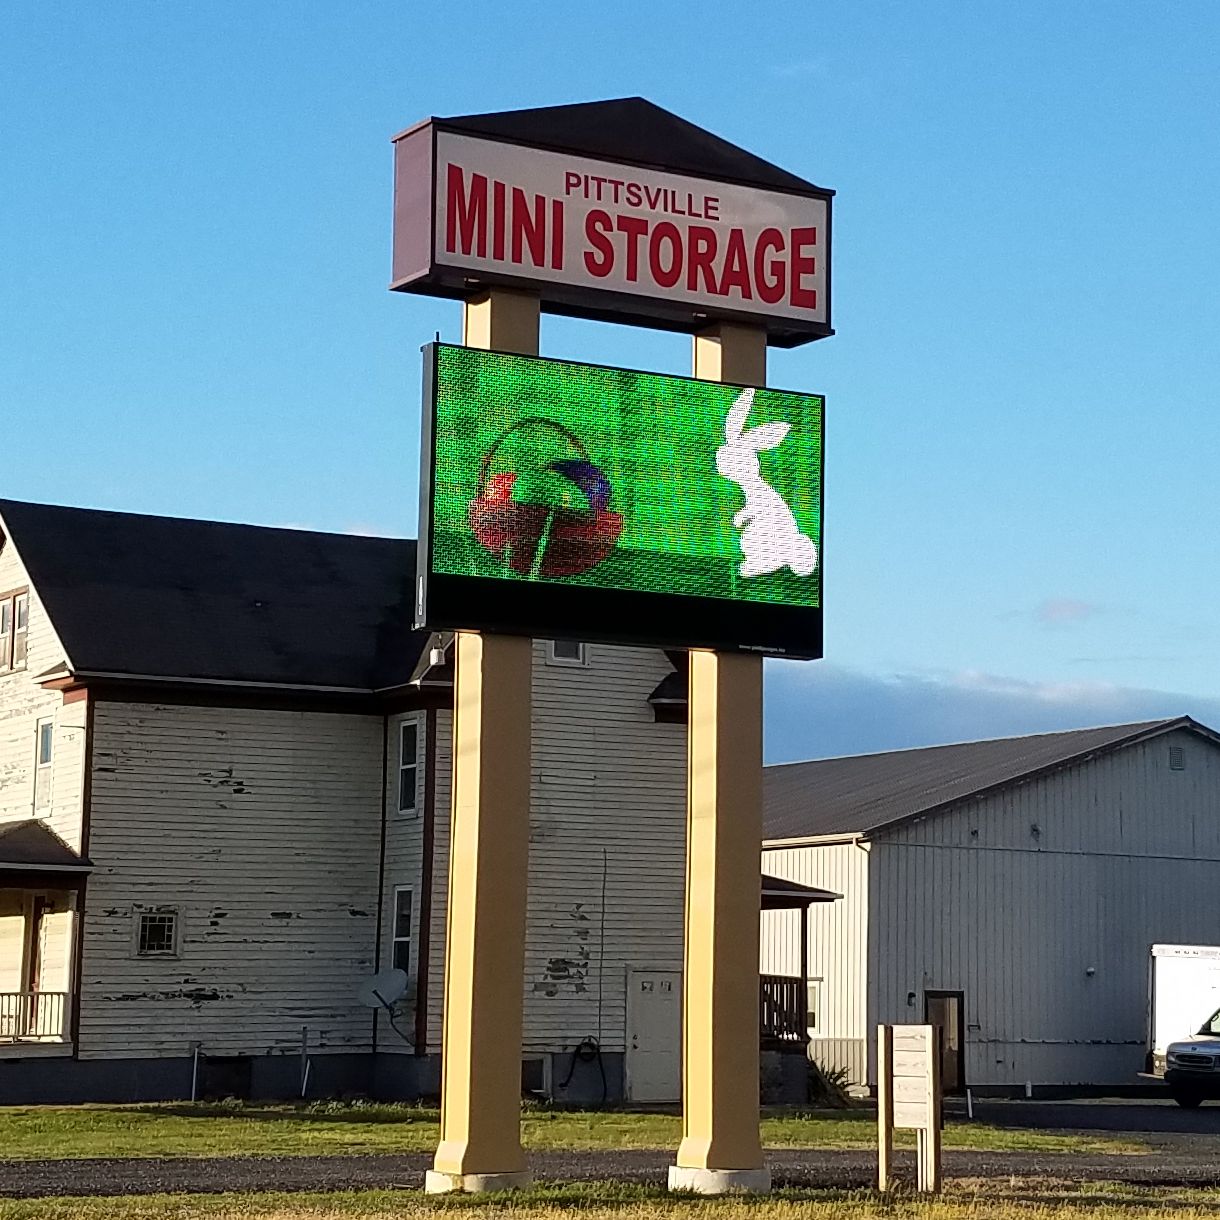 Storage Service in Pittsville, Maryland